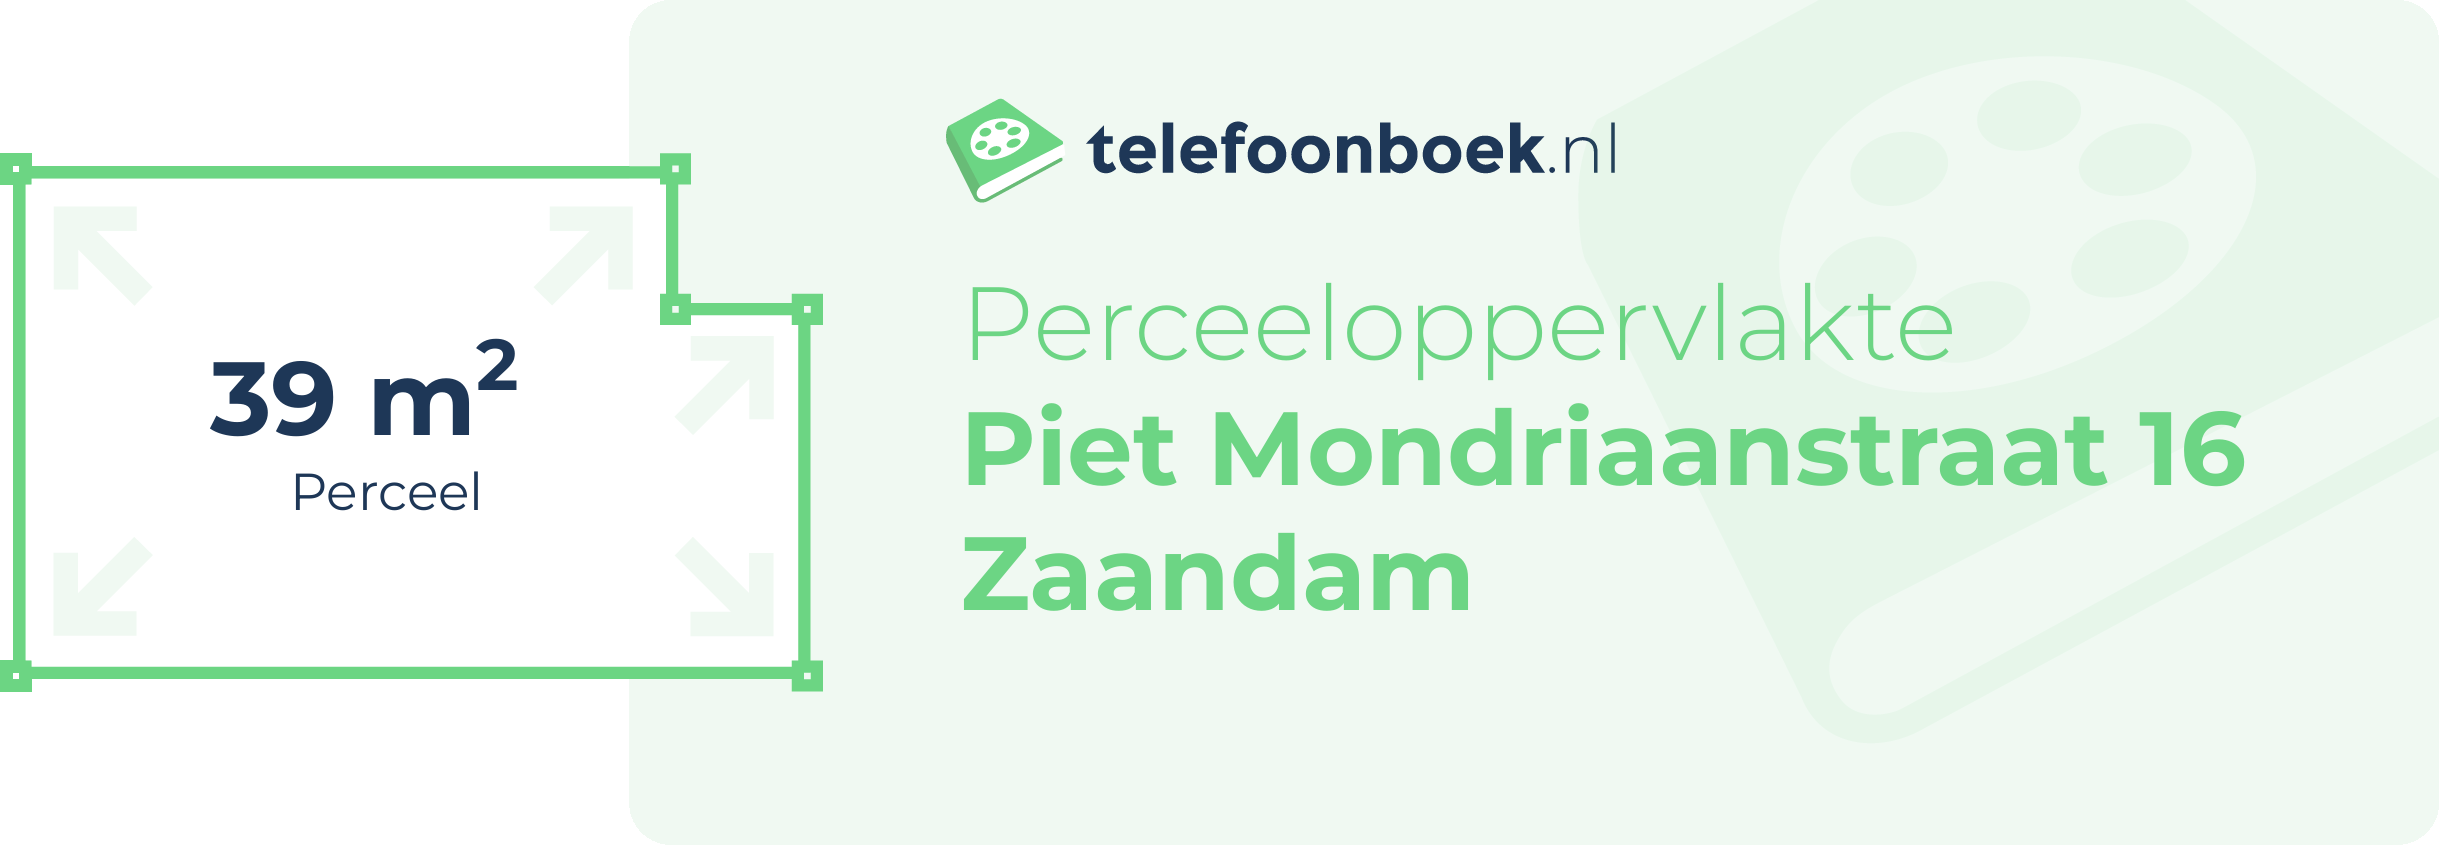 Perceeloppervlakte Piet Mondriaanstraat 16 Zaandam